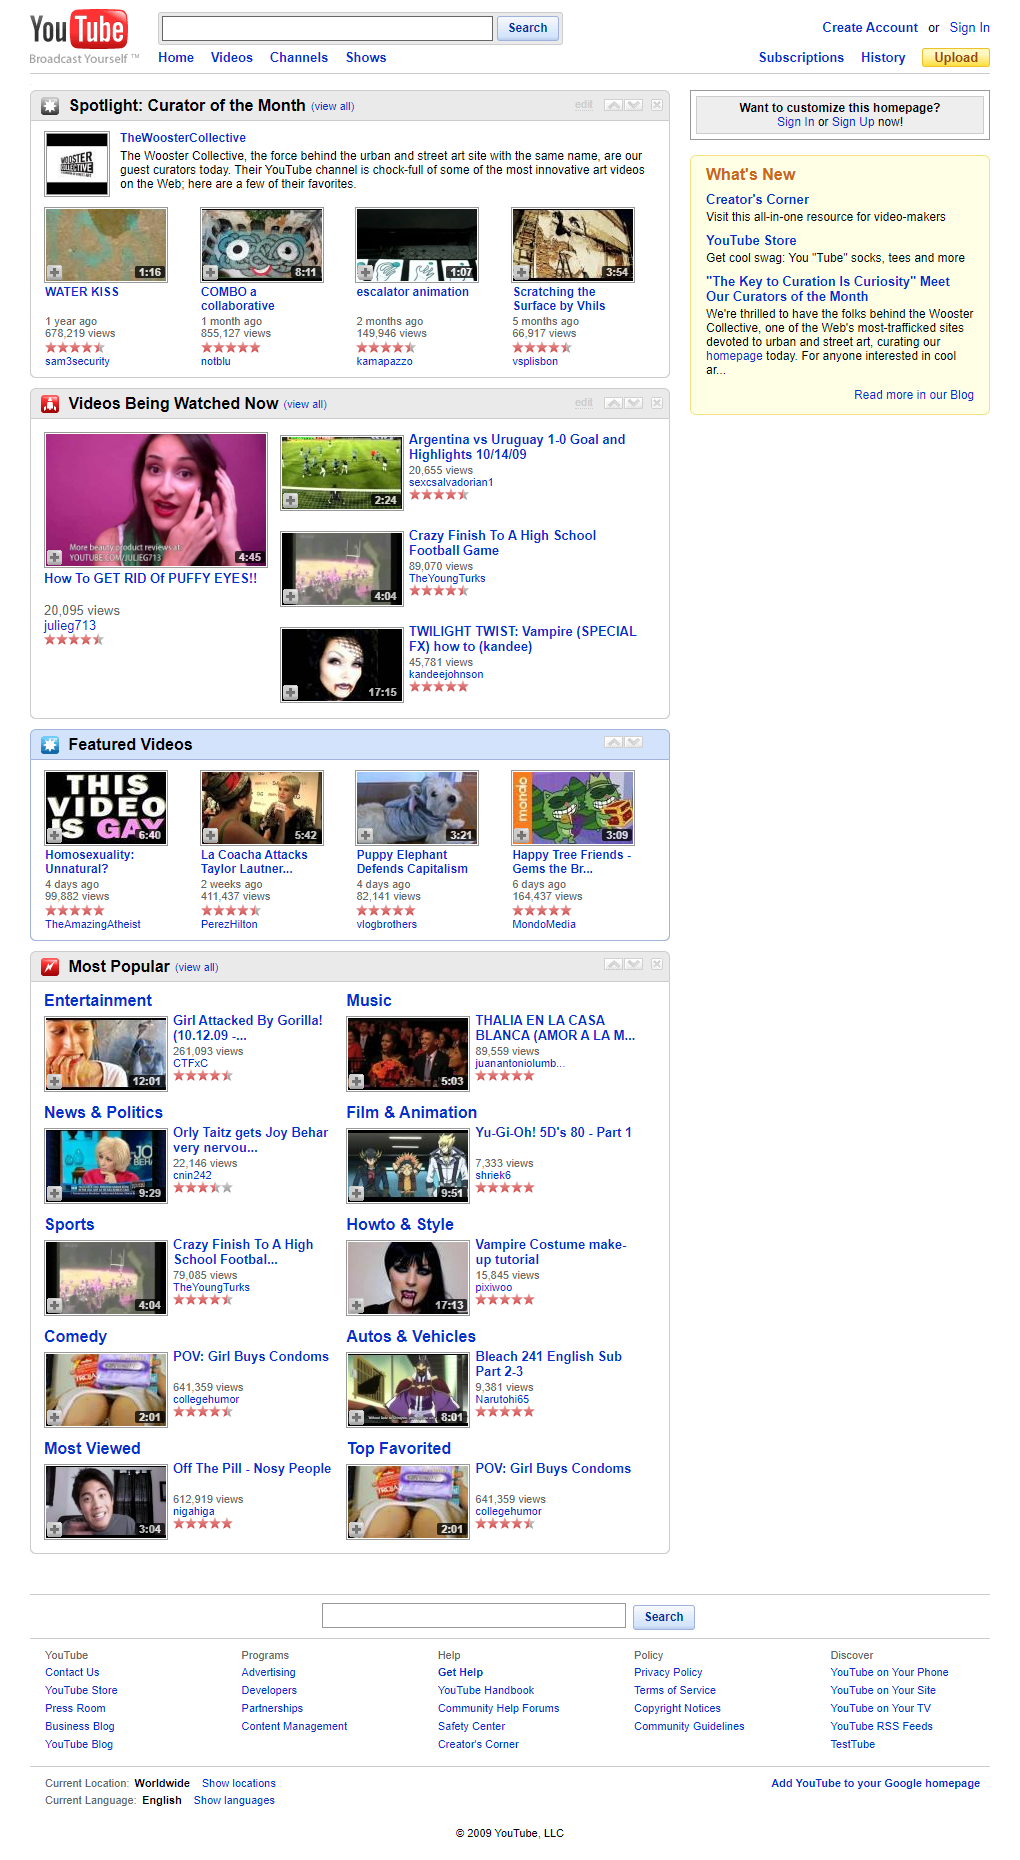 YouTube in 2009